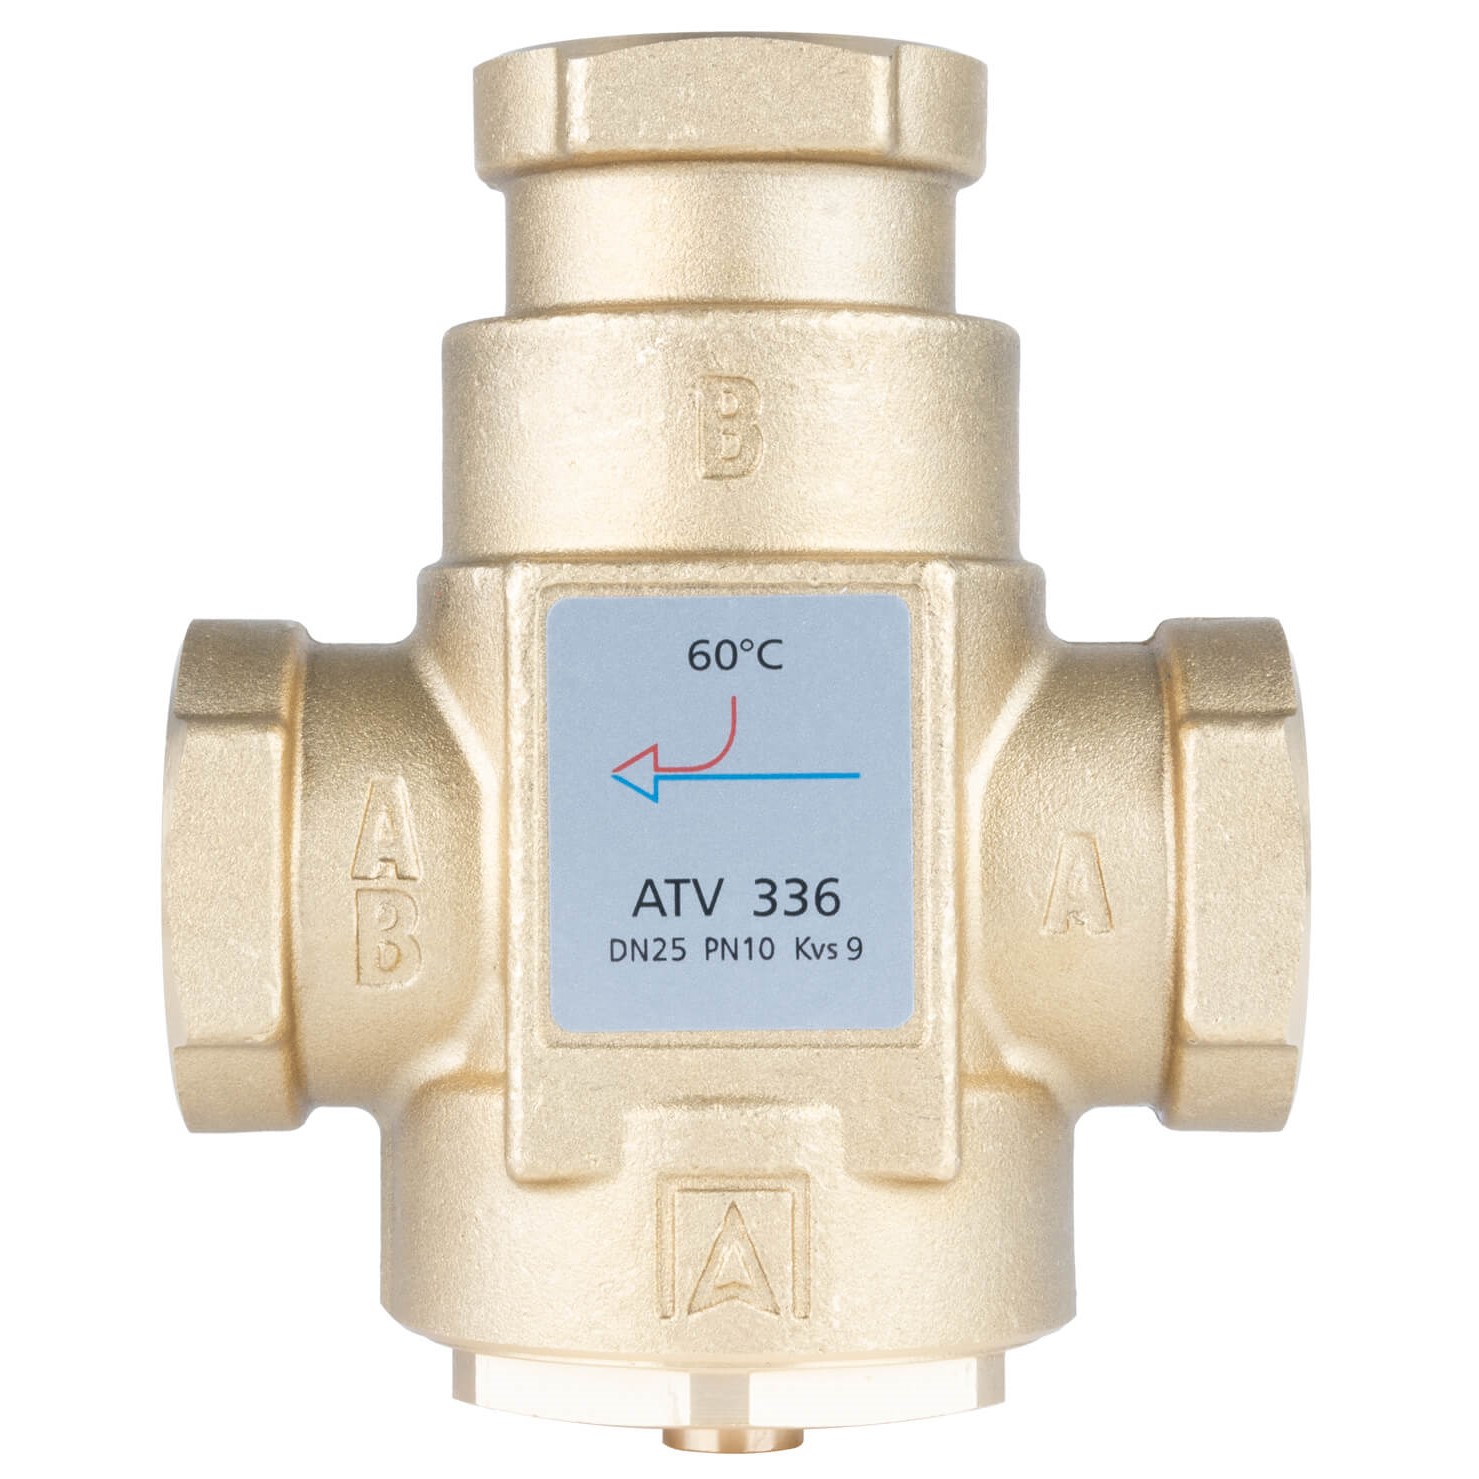 Termostatický ventil ATV 336, Rp1", 60 °C - AFRISO.CZ